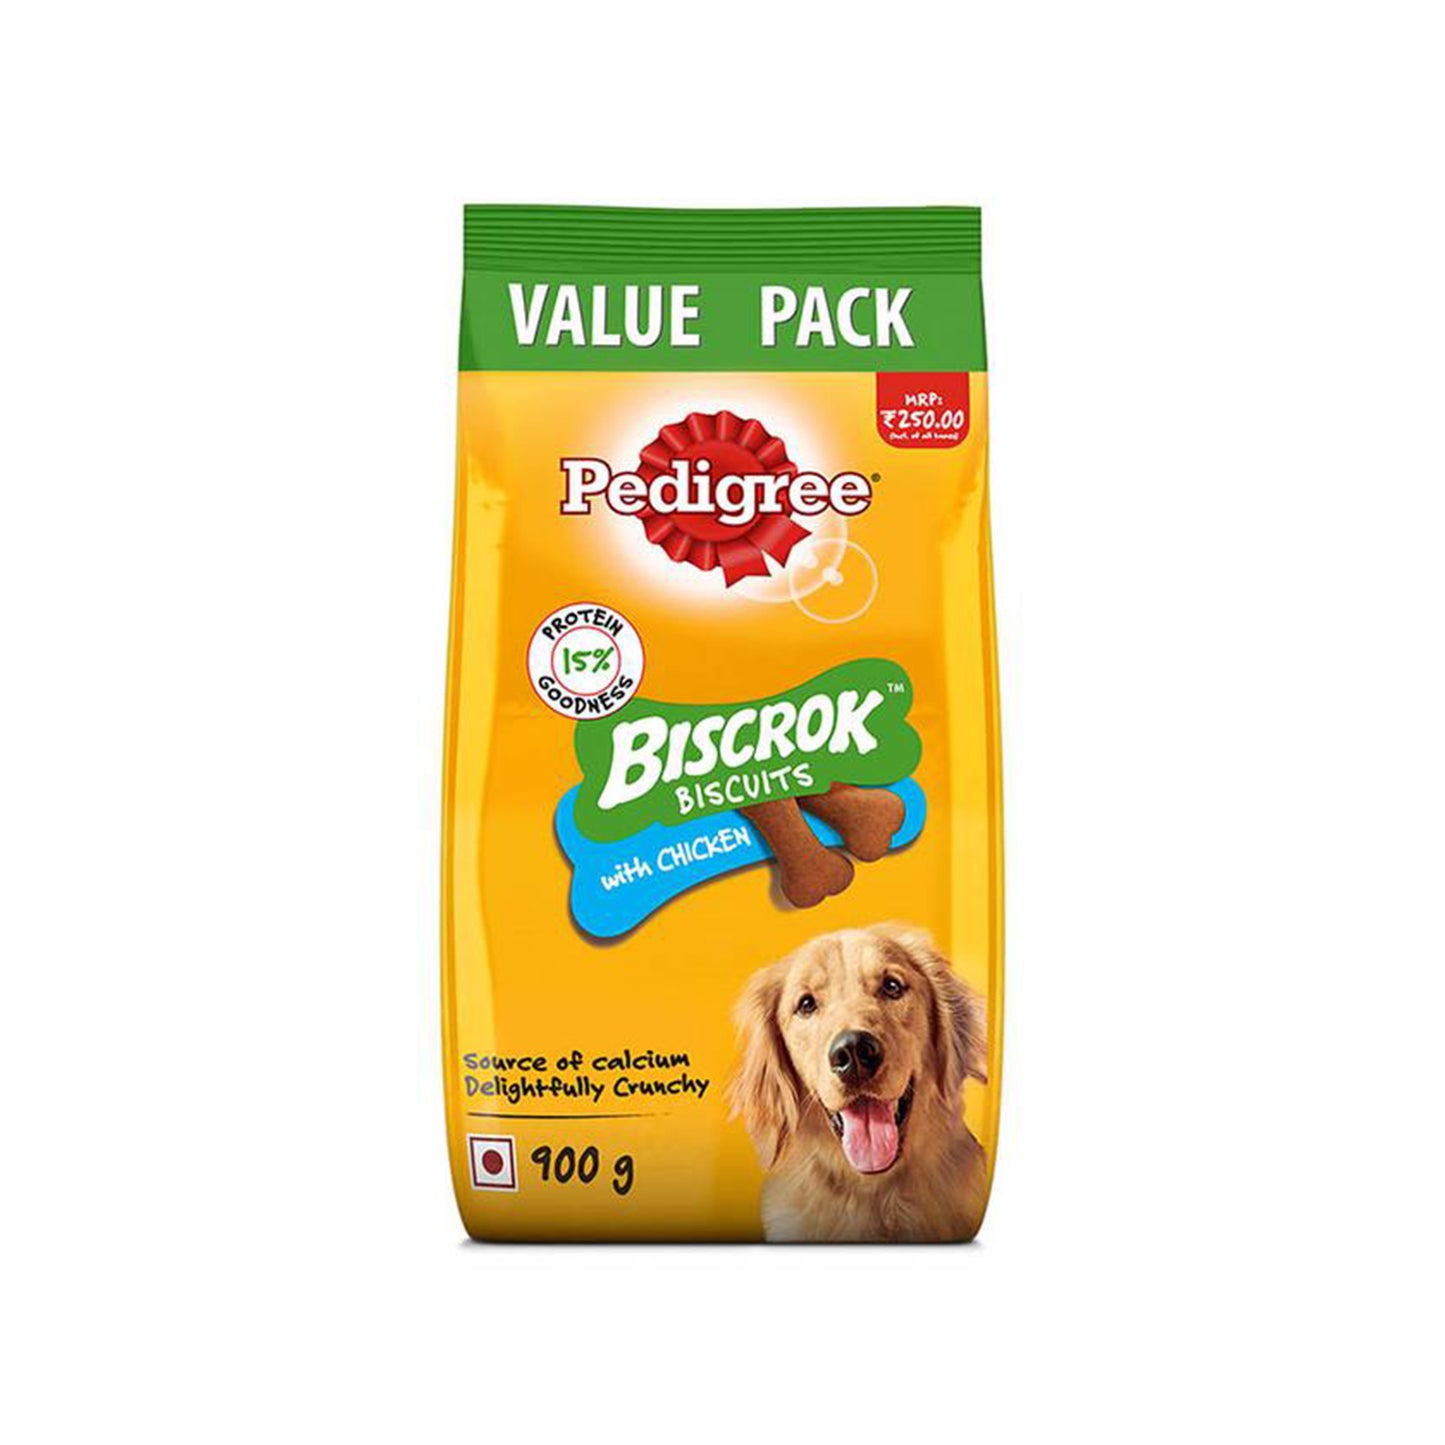 Pedigree - Biscrok Biscuits Dog Treats (Above 4 Months) | Flavour : Chicken, Milk & Chicken